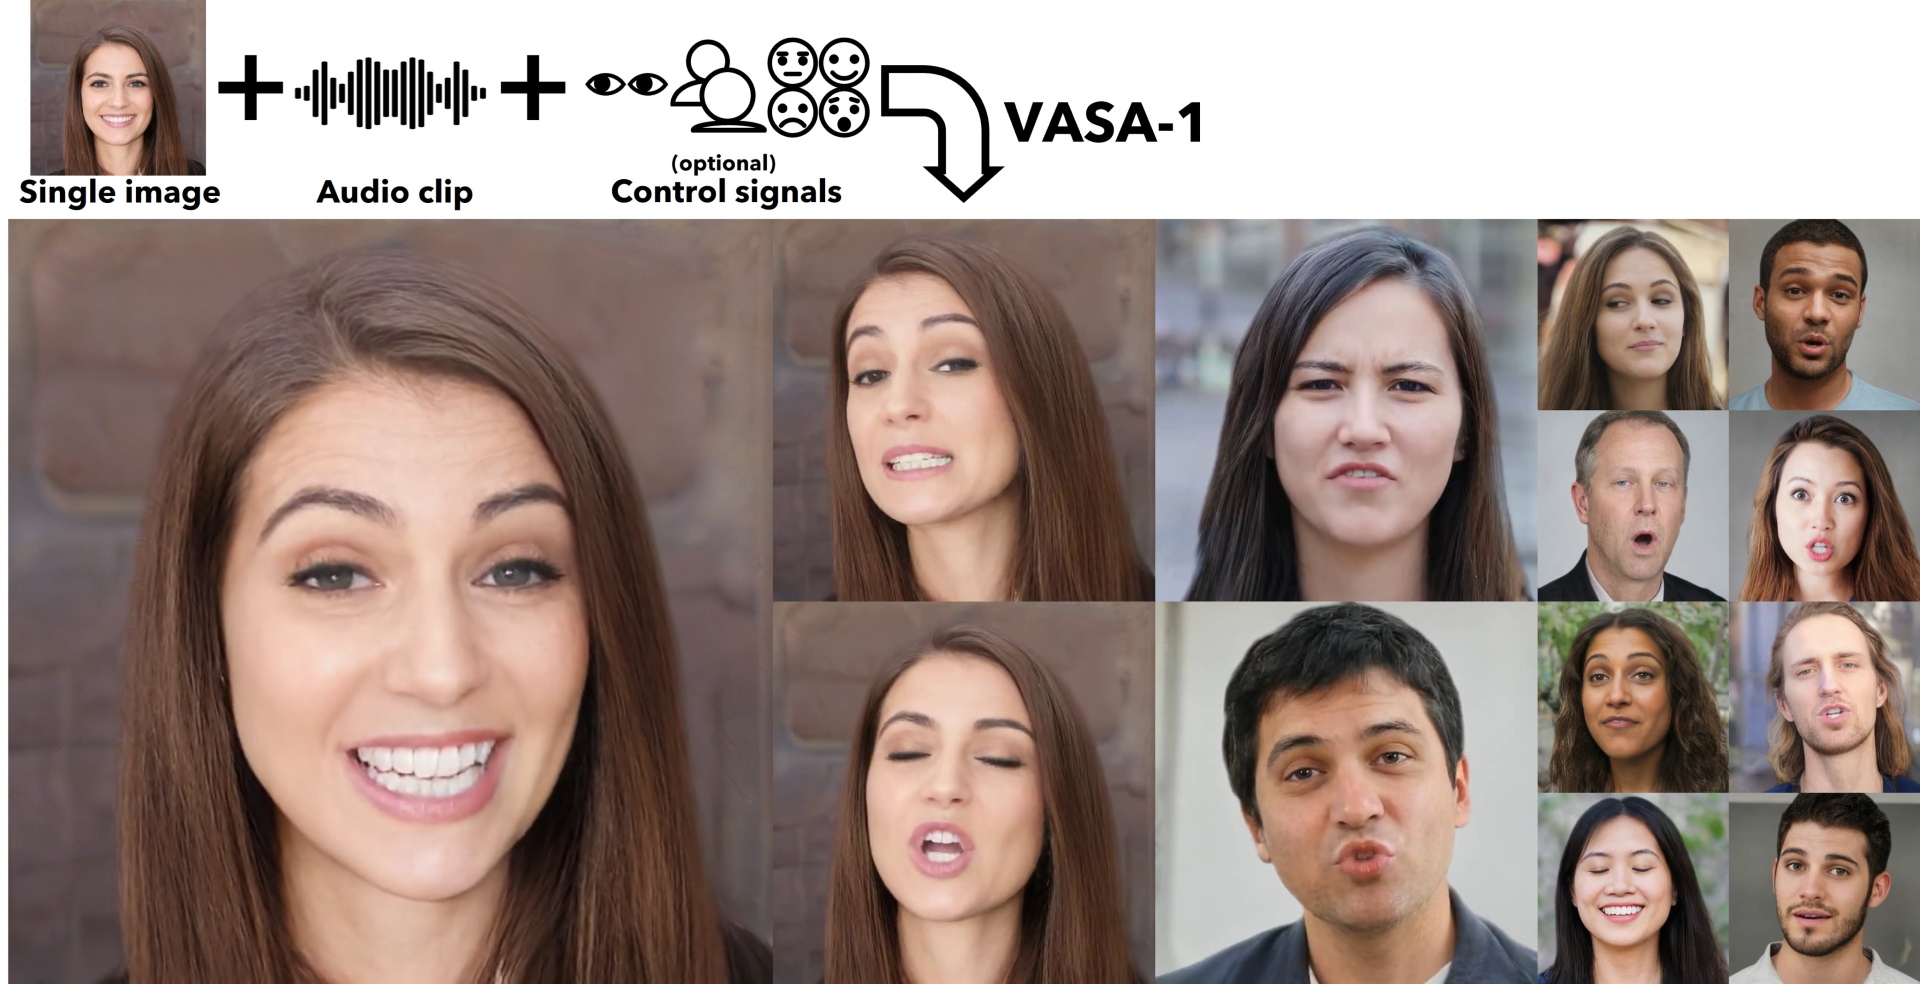 Microsoft, Tek Bir Görsel ve Ses Kaydından Ultra Gerçekçi İnsan Videoları Oluşturabilen "VASA-1" Yapay Zekâ Modelini Tanıttı